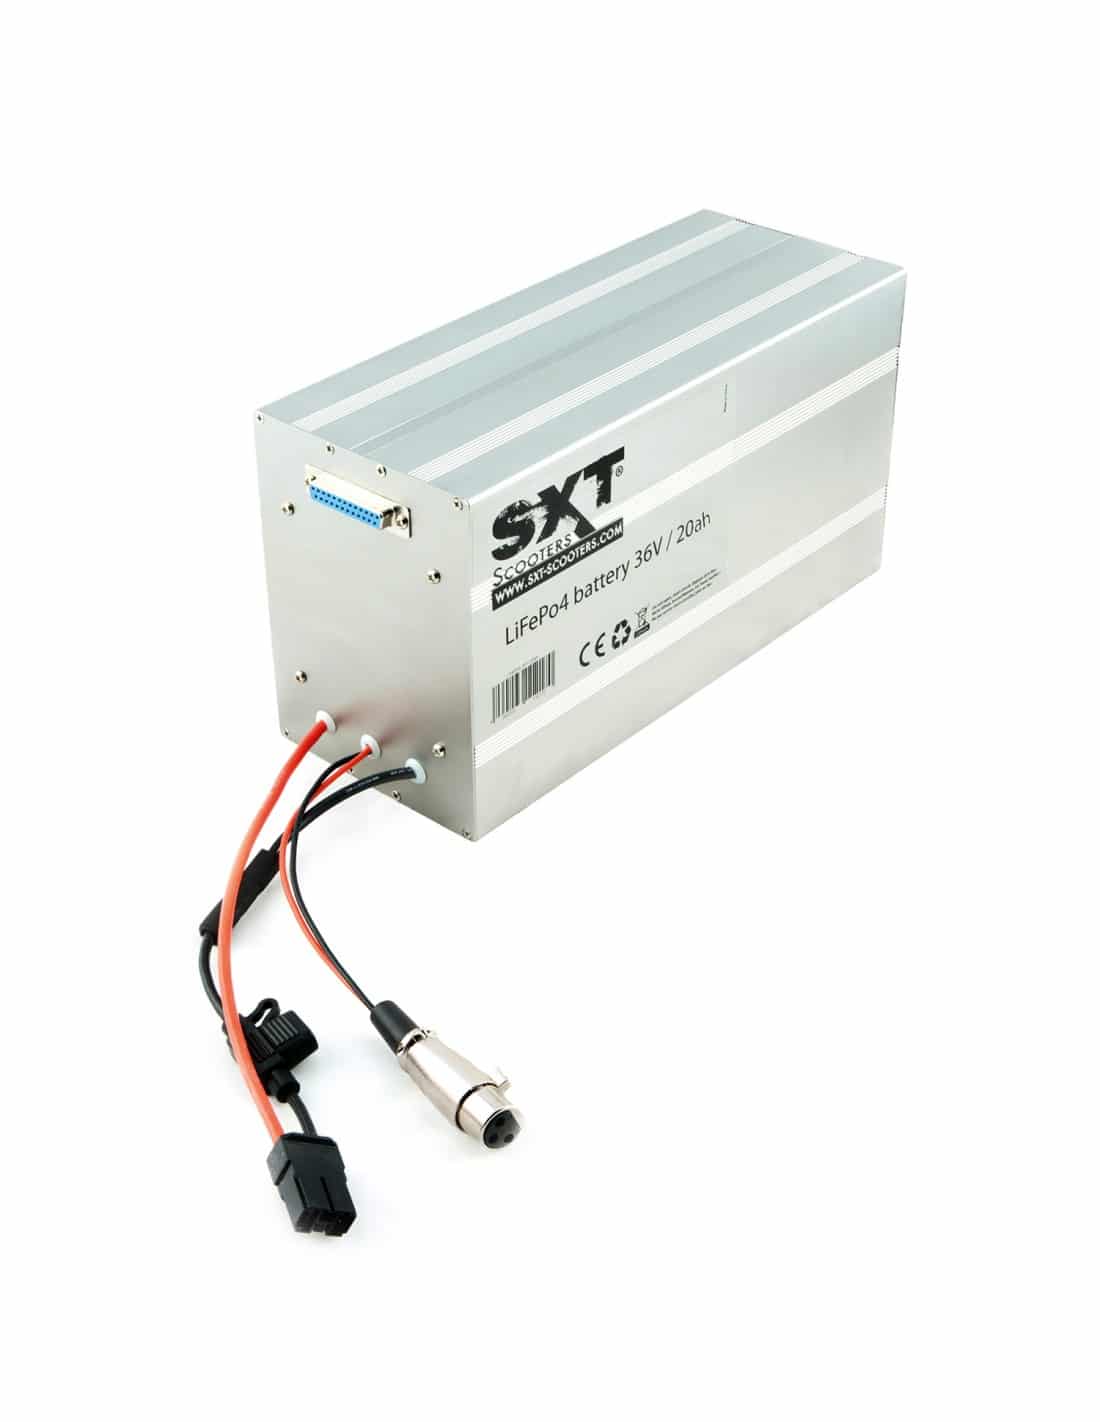 Li-batterie 36V 14Ah - Pièces détachées SXT Trottinette électrique et  Scooter